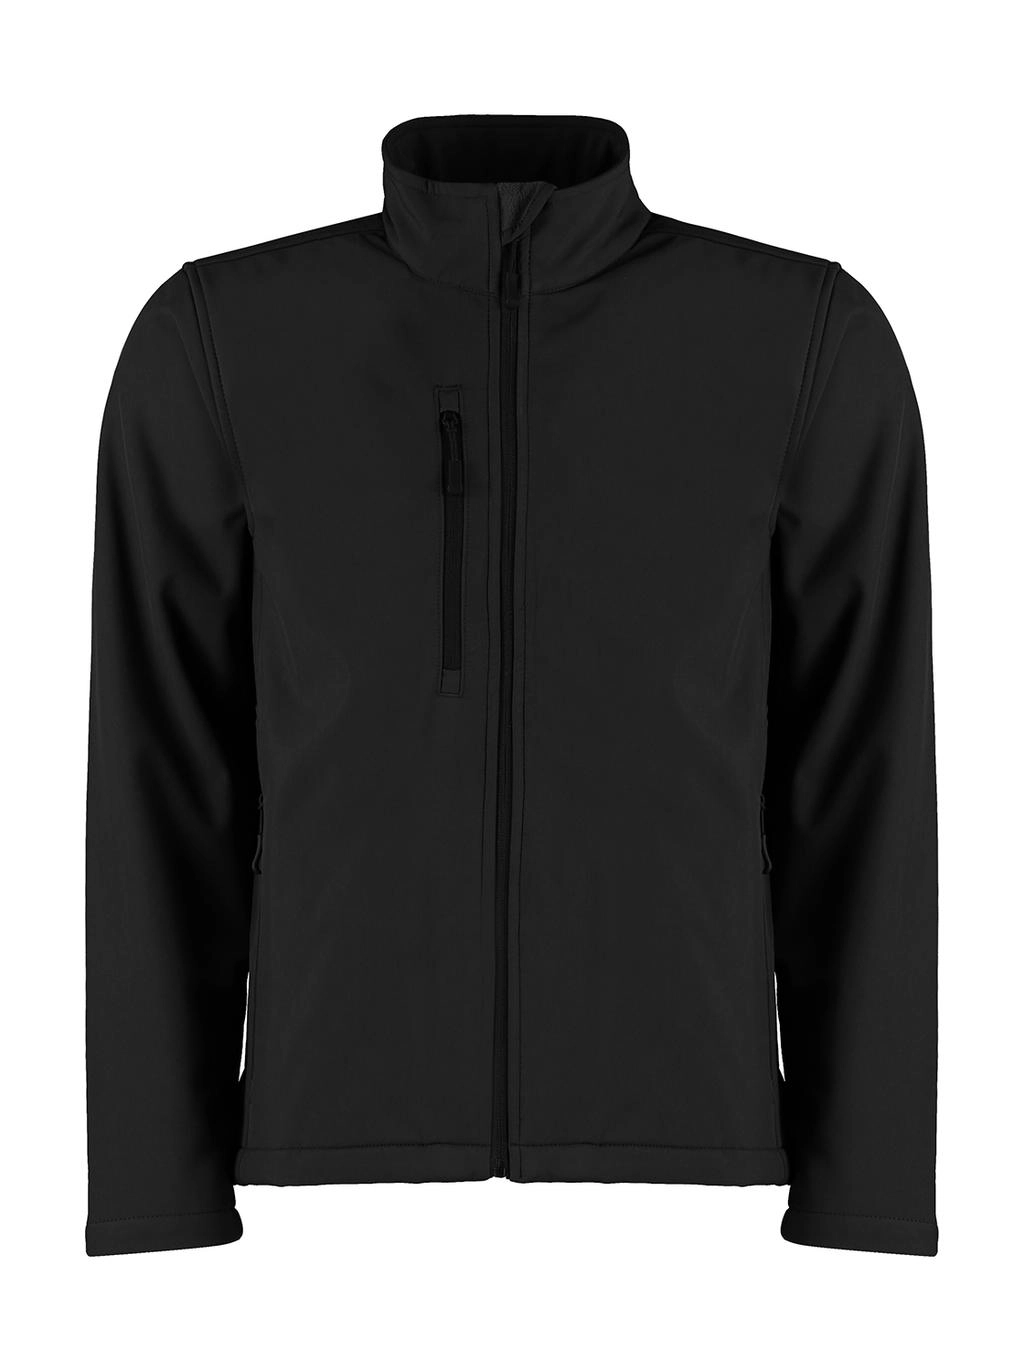 Regular Fit Soft Shell Jacket zum Besticken und Bedrucken in der Farbe Black mit Ihren Logo, Schriftzug oder Motiv.